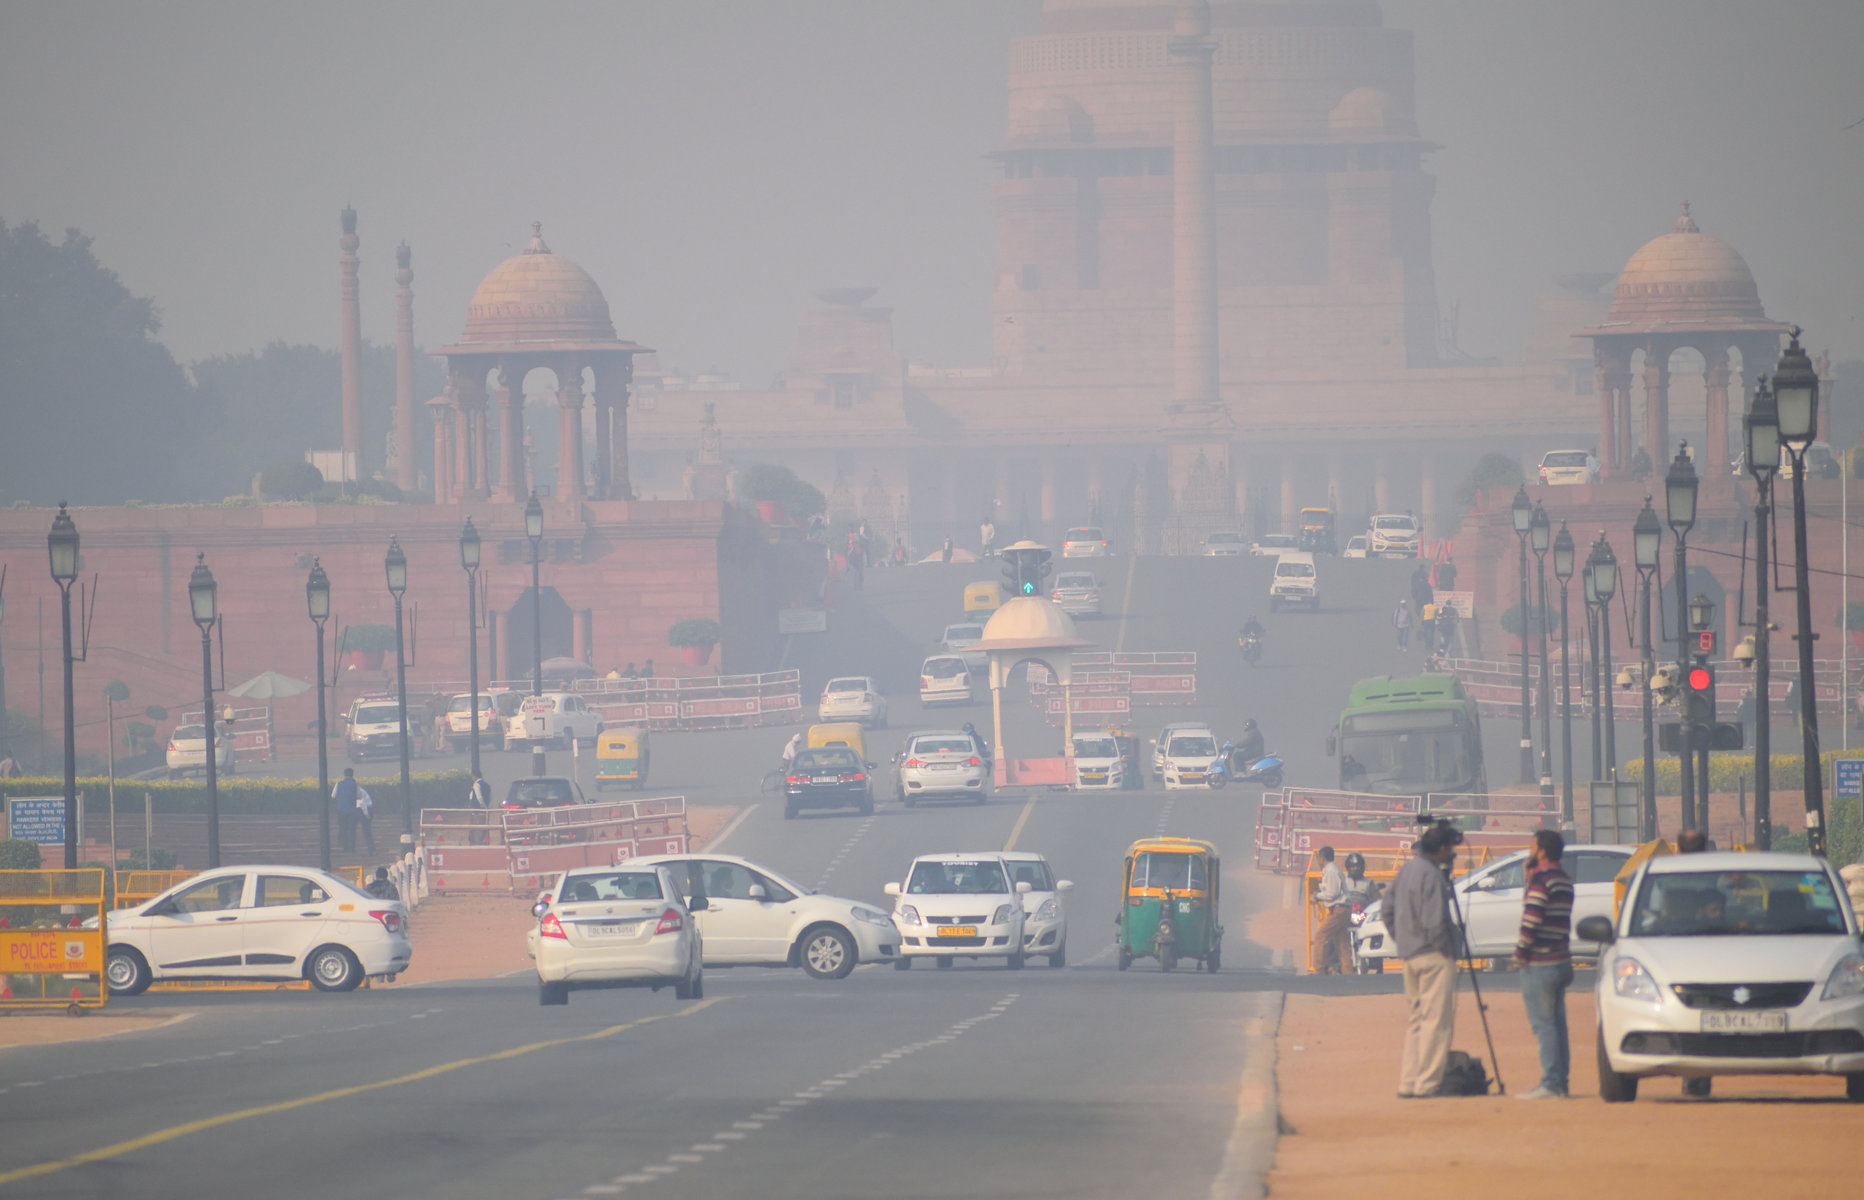 Πως συνδέεται το πρόβλημα αιθαλομίχλης στο Δελχί με την κρίση νερού της Ινδίας